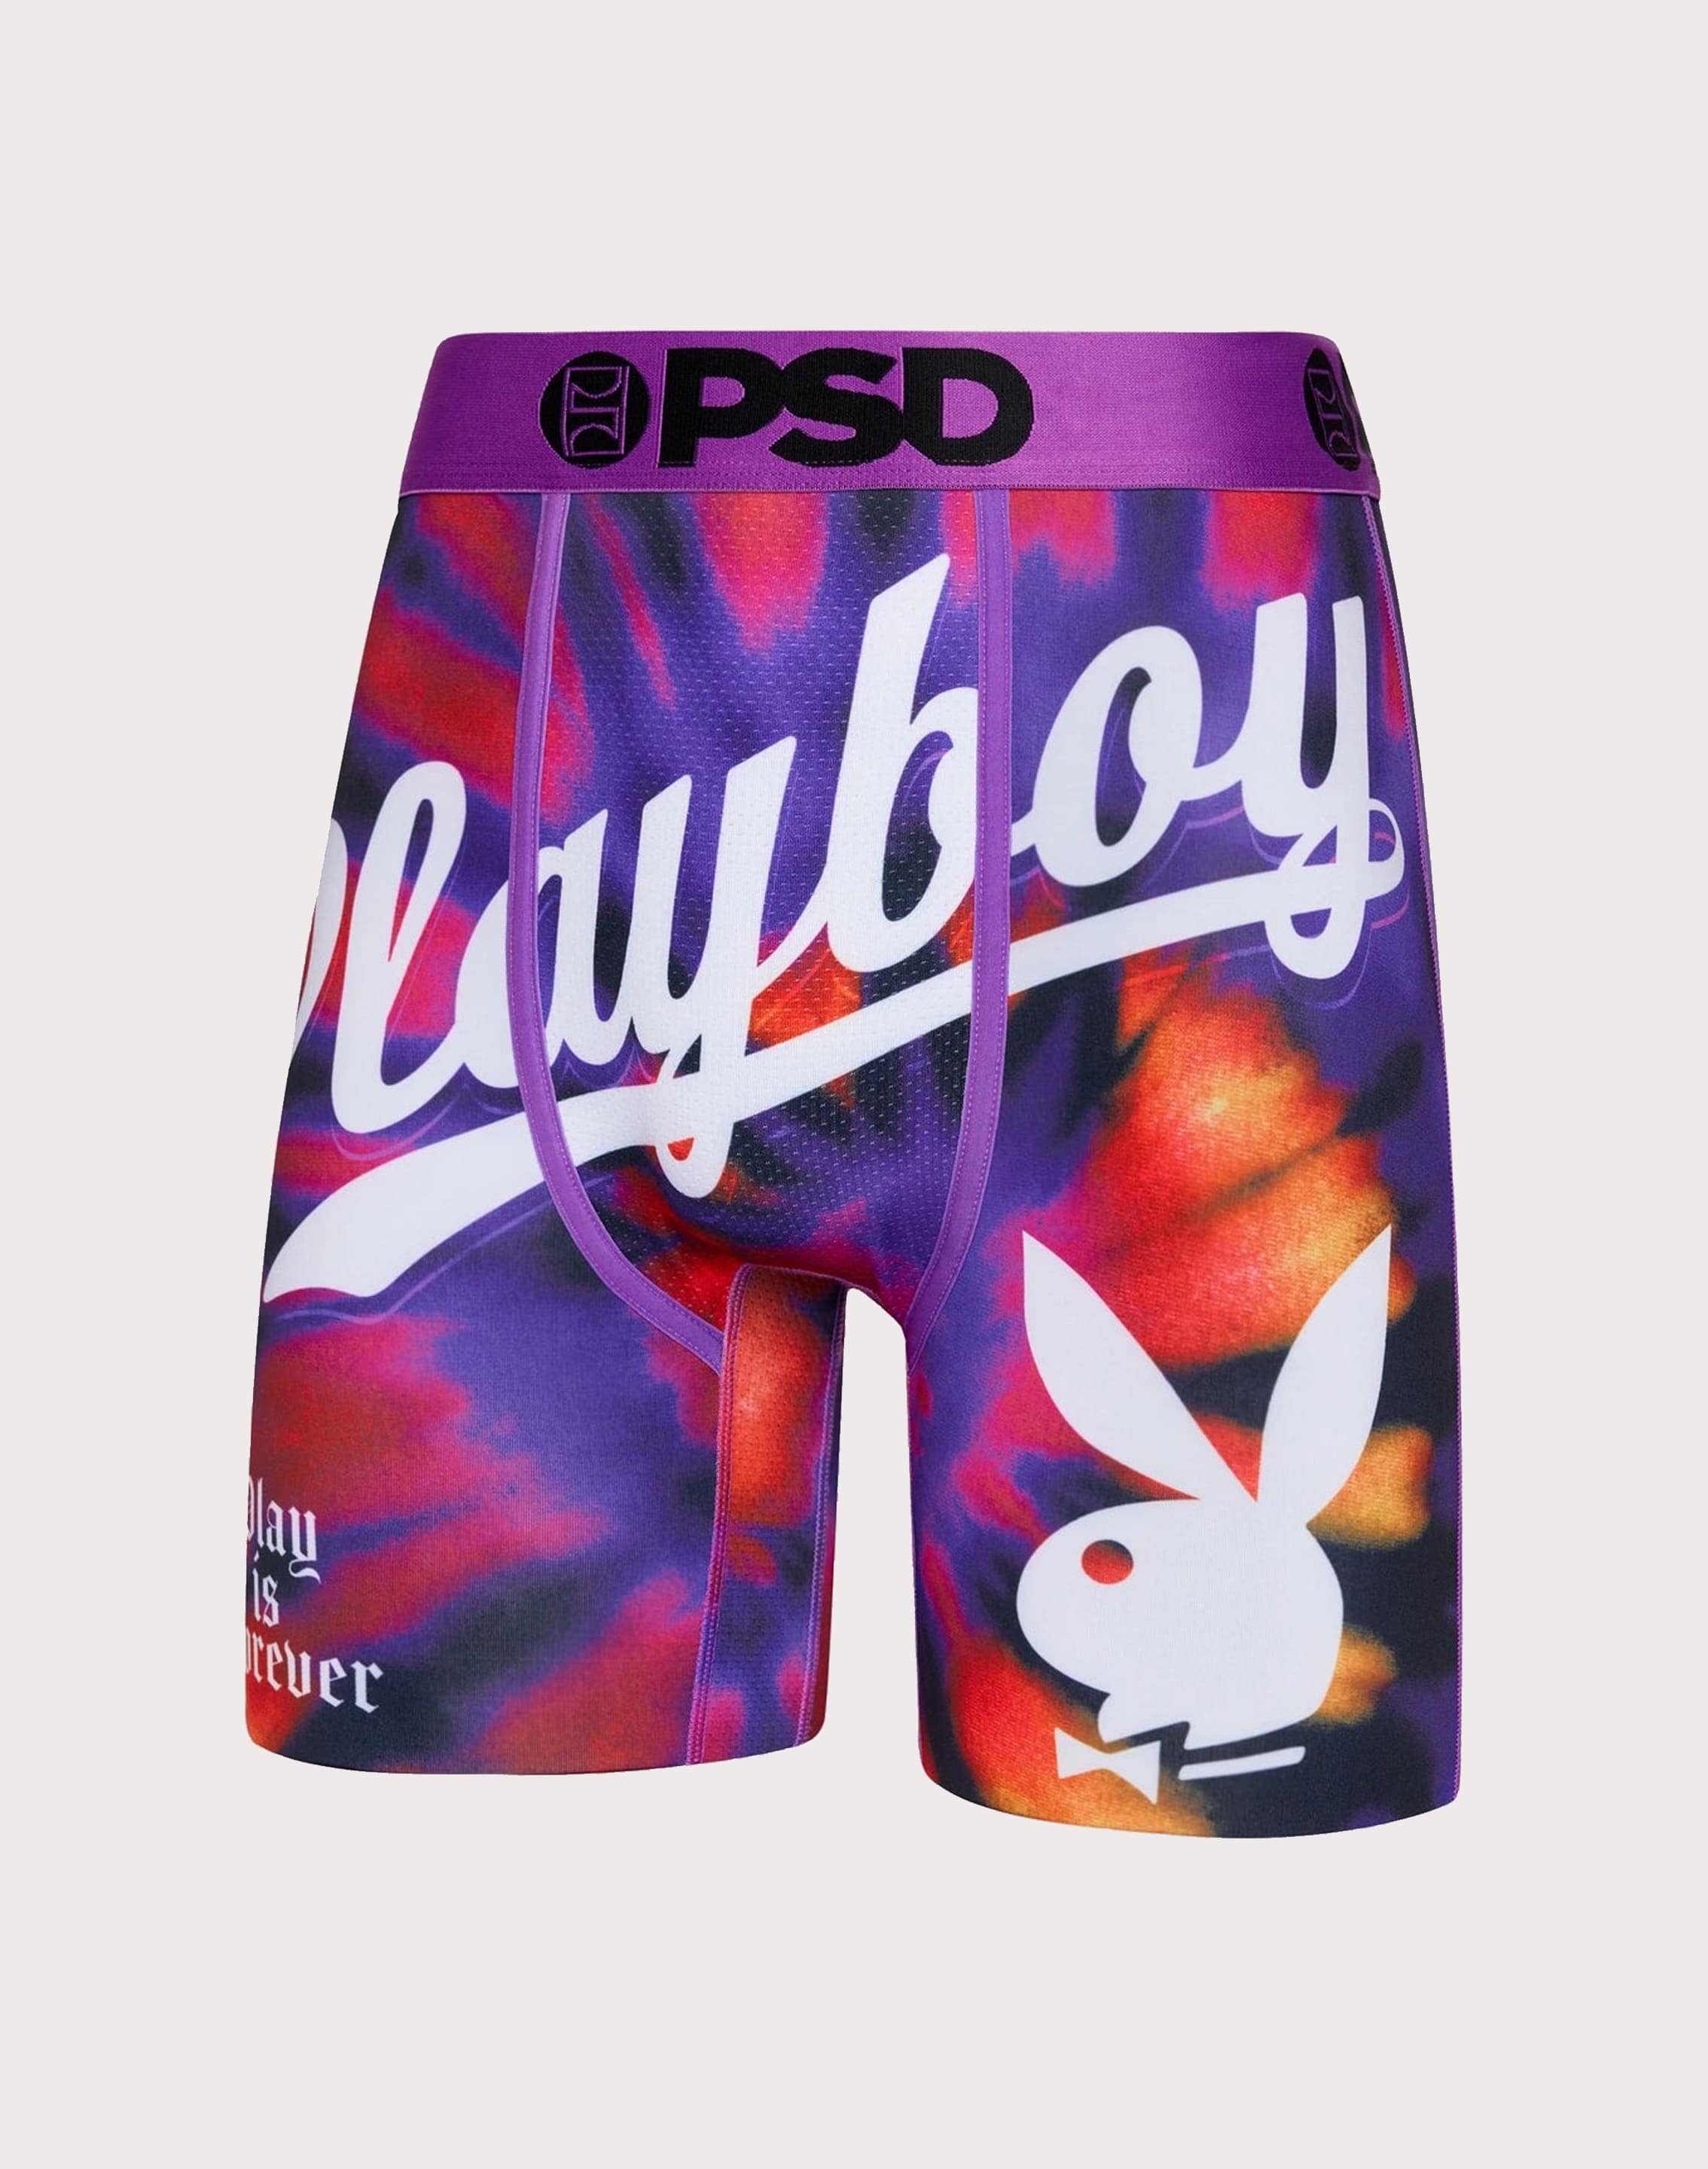 Playboy Underwear Boxermen's Playboy-style Boxer Shorts